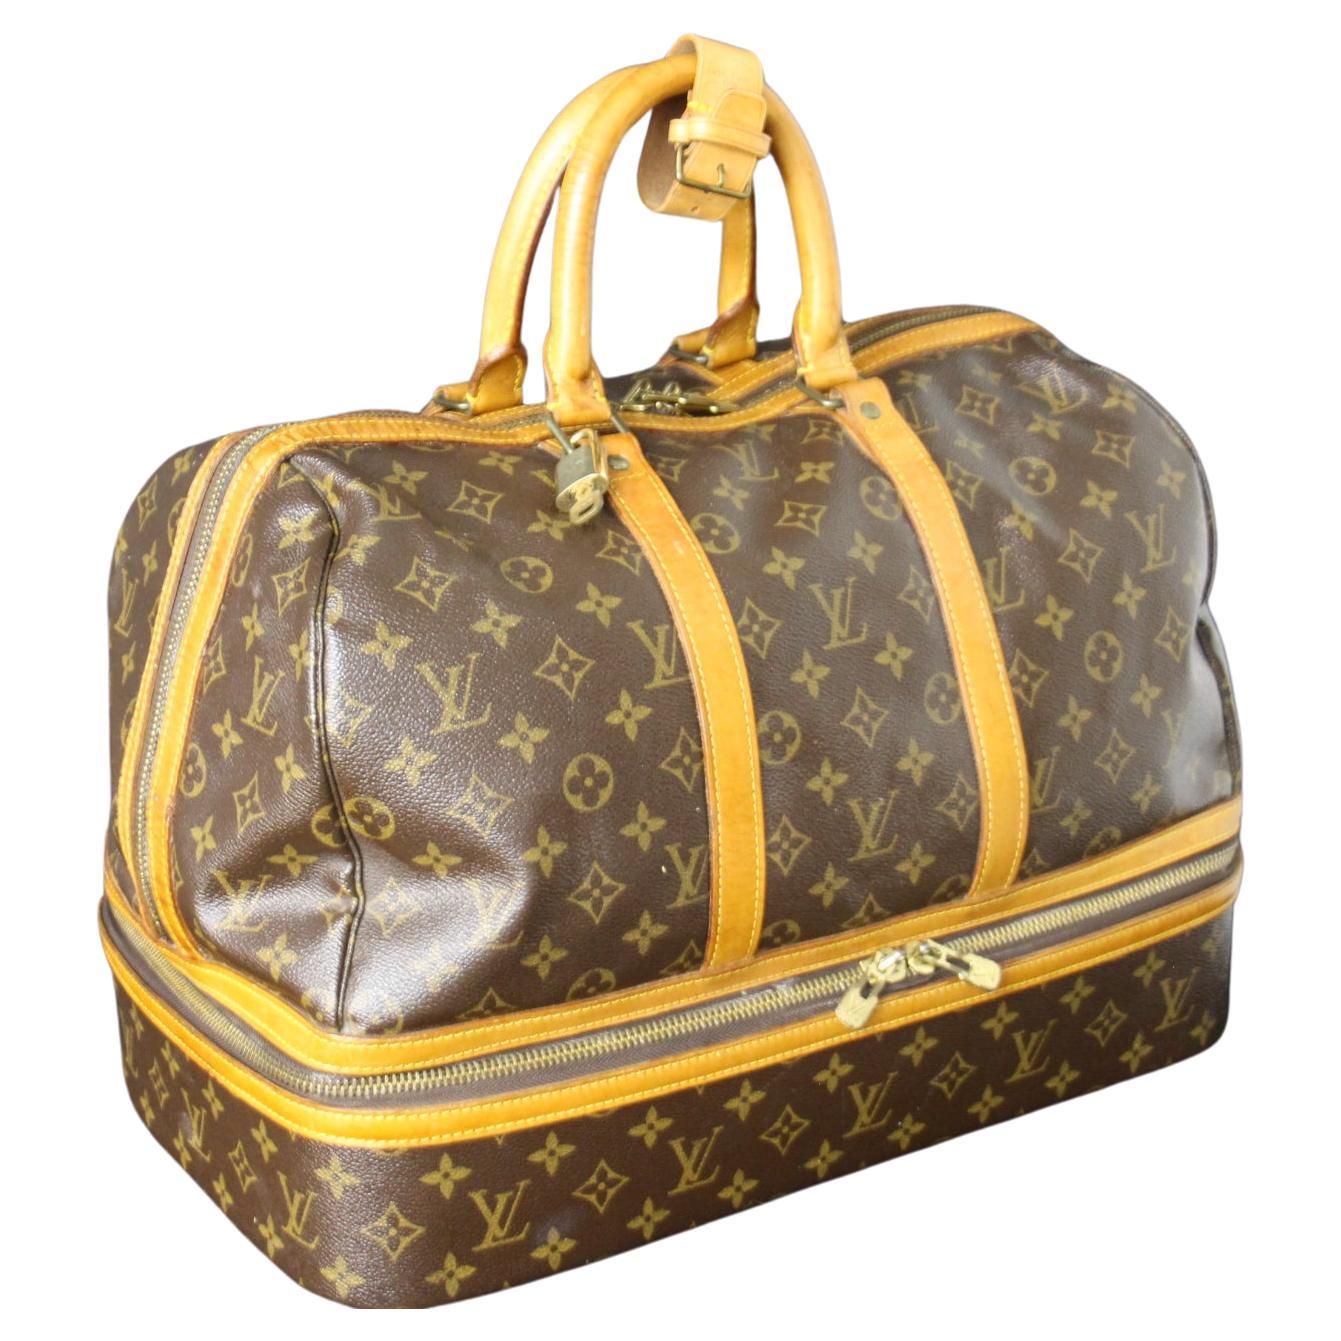 Large Louis Vuitton Bag, Large Louis Vuitton Duffle Bag, Vuitton Boston Bag For Sale